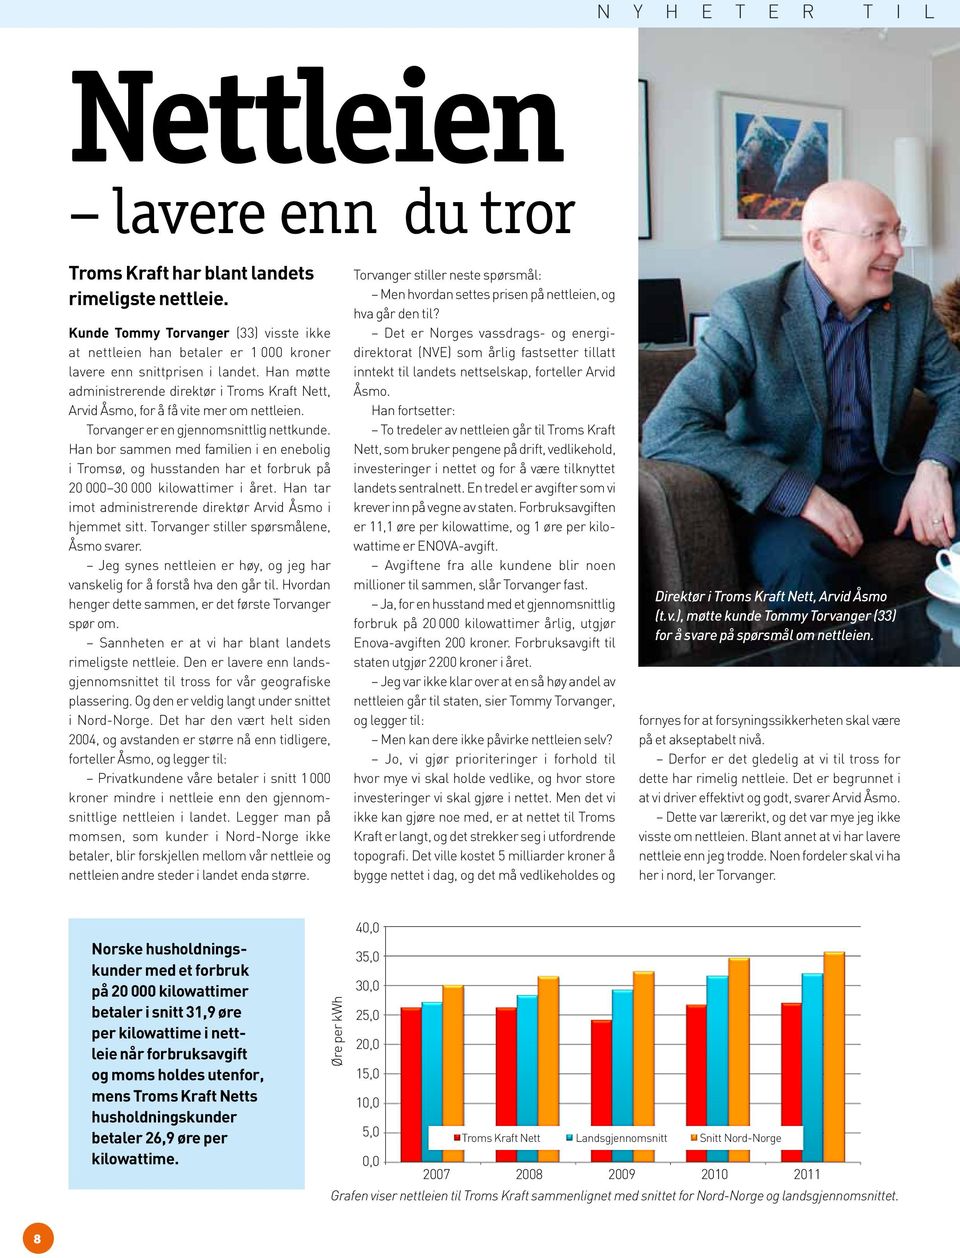 Han møtte administrerende direktør i Troms Kraft Nett, Arvid Åsmo, for å få vite mer om nettleien. Torvanger er en gjennomsnittlig nettkunde.